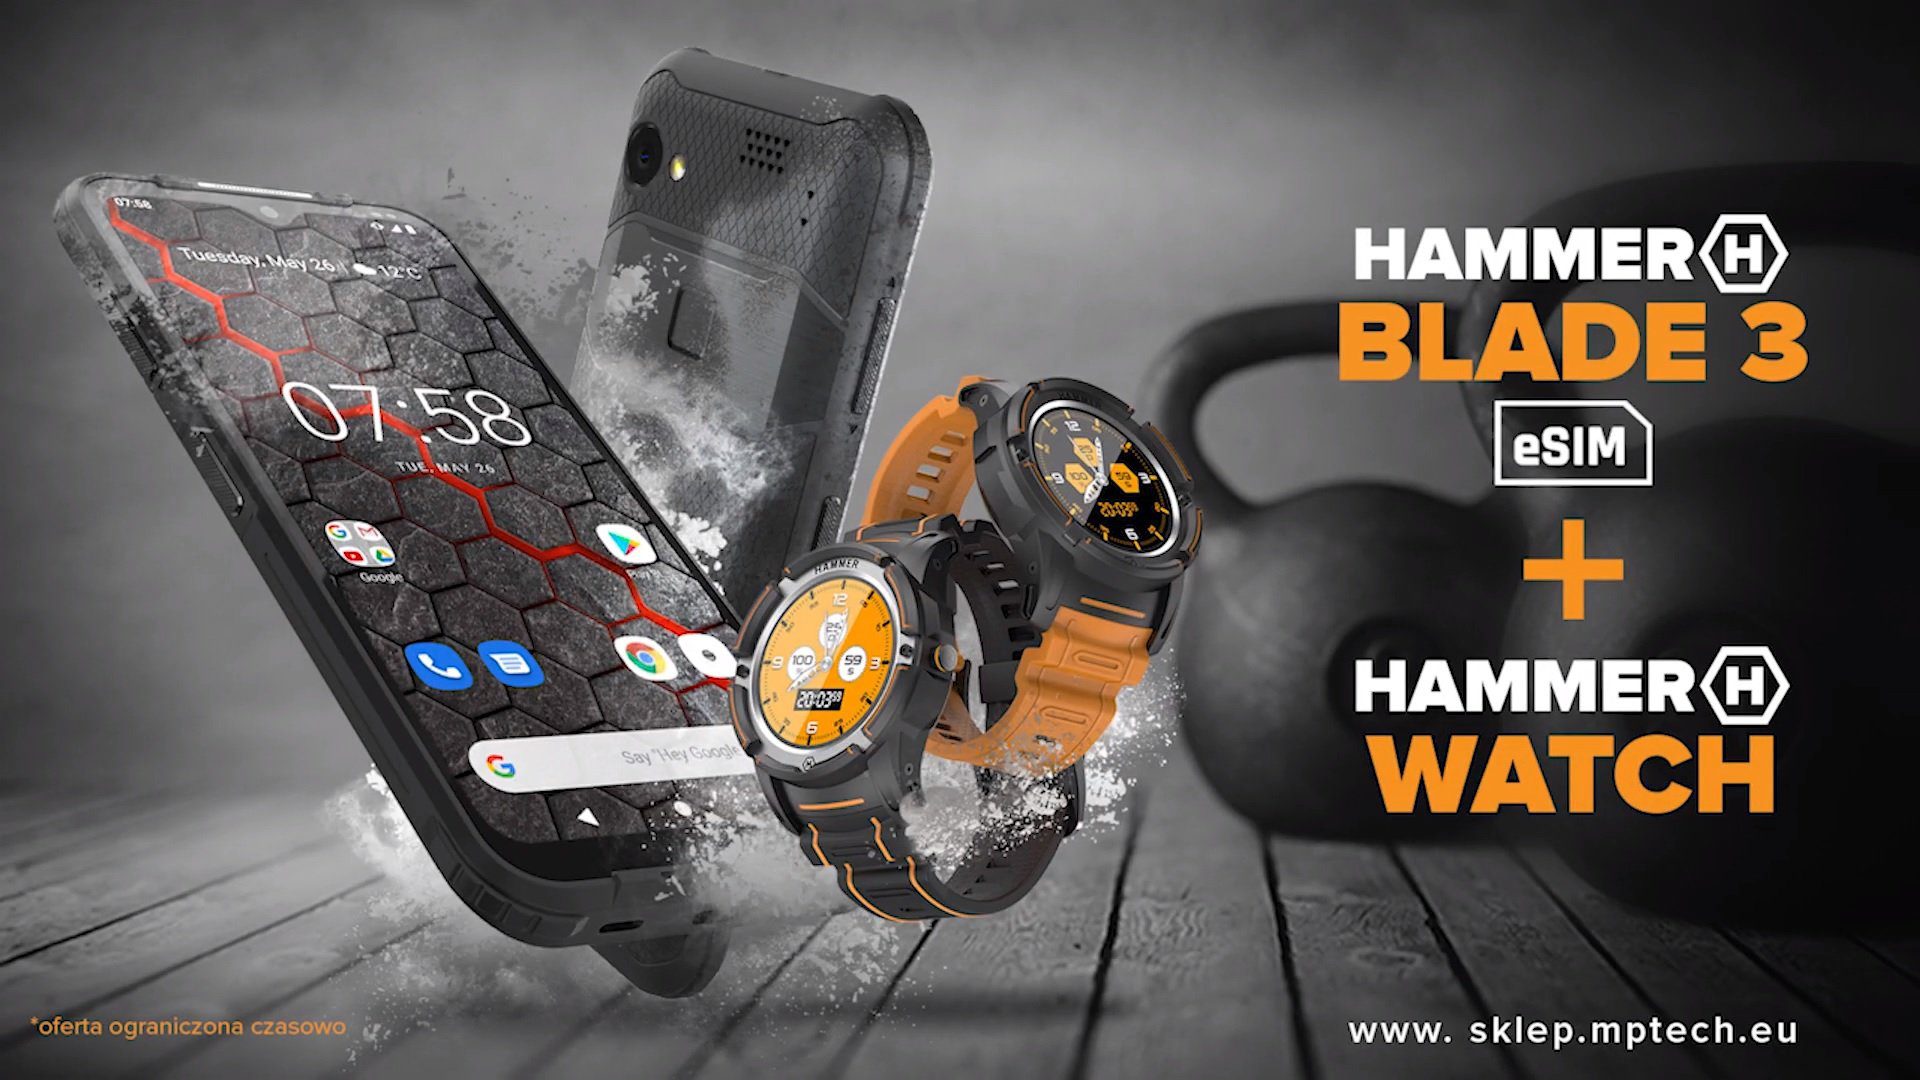 HAMMER Watch feiert sein Debüt auf dem polnischen Markt. Du kannst es verschenken, aber nicht umsonst 246